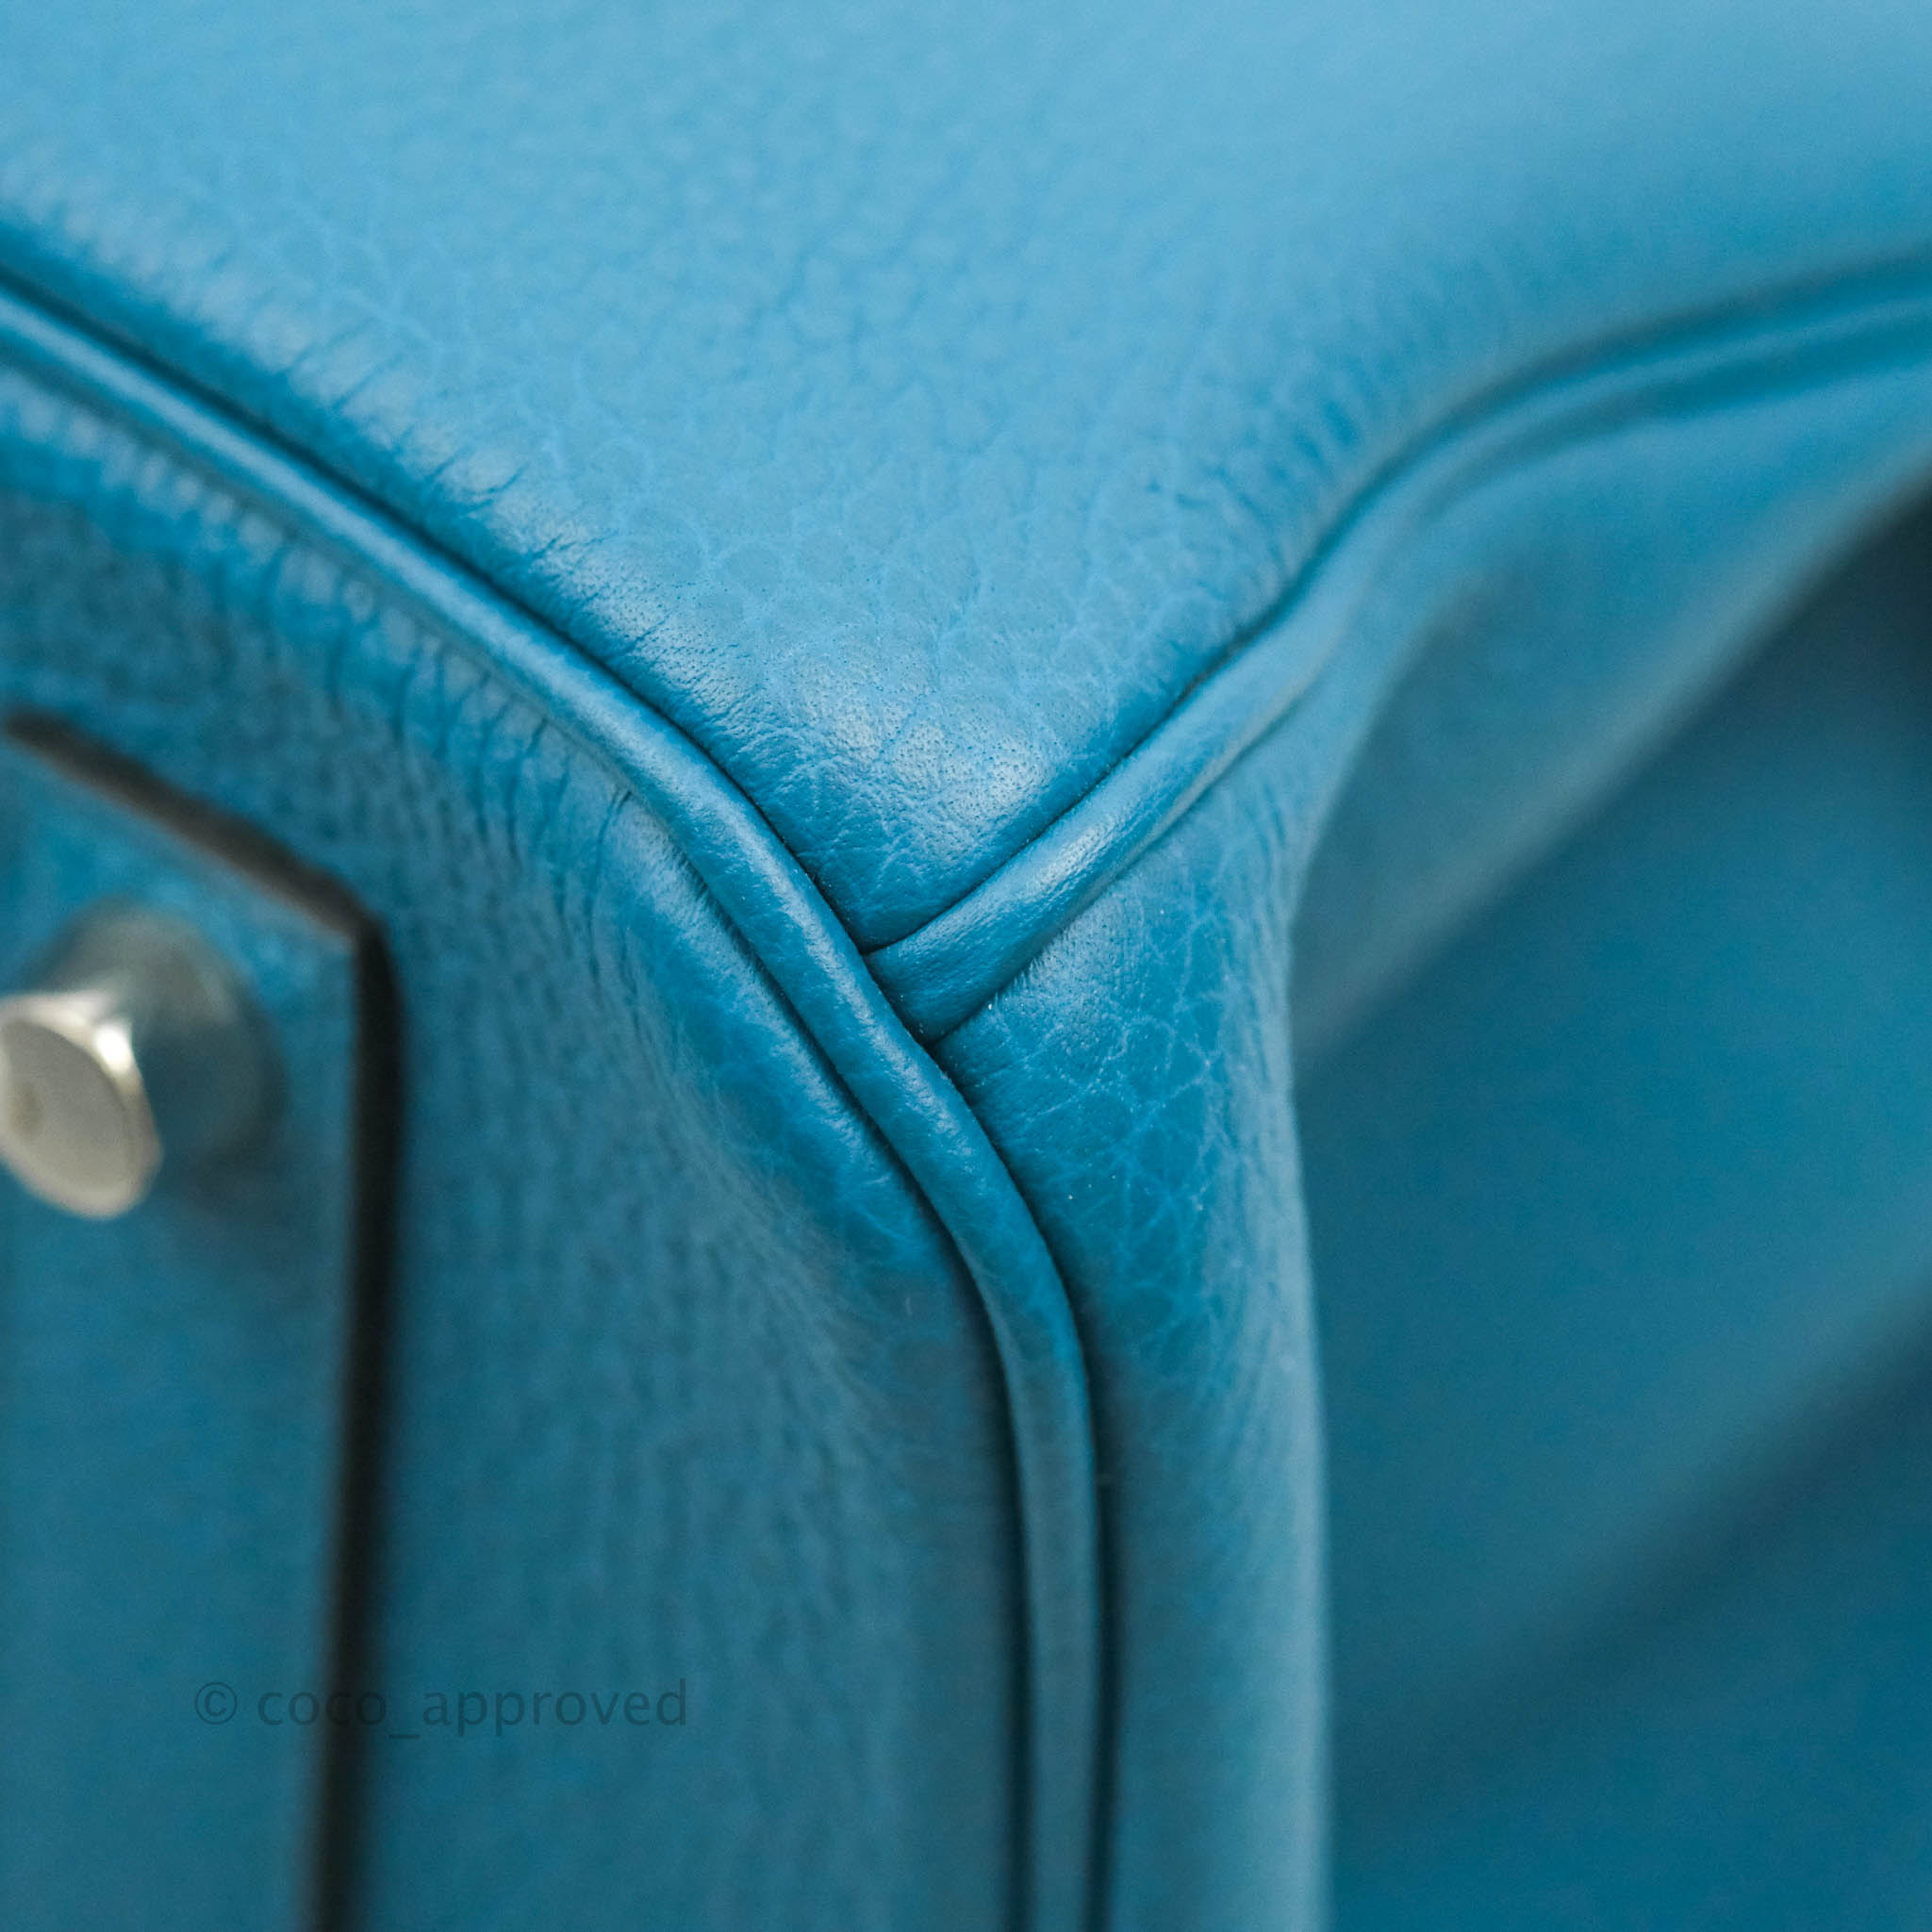 Hermès Cobalt Blue Togo Birkin 35 with Palladium Hardware – Luxury GoRound